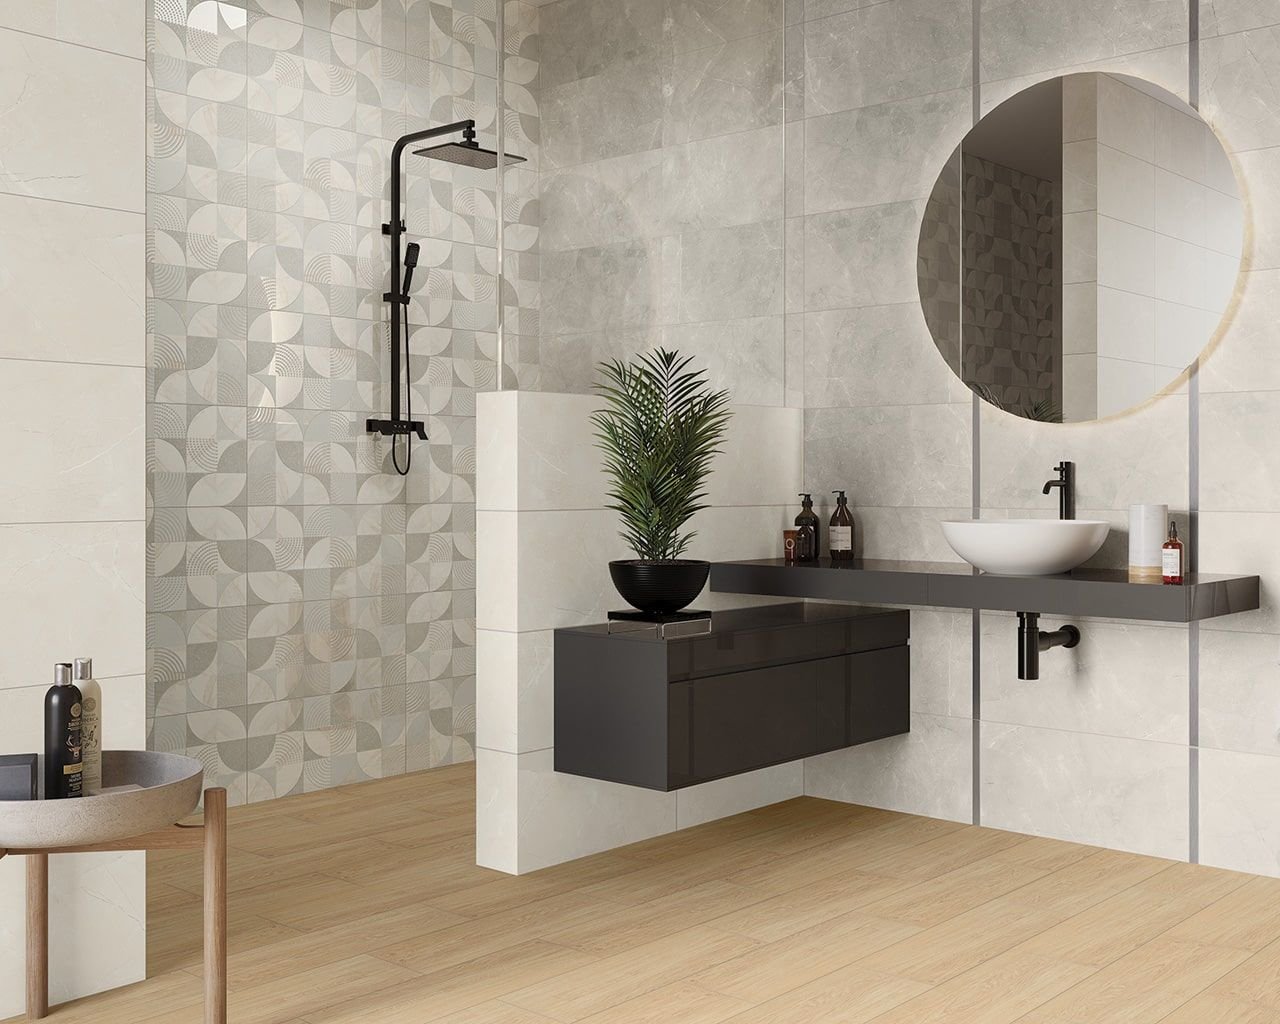 #Koupelna #Kuchyně #mramor #Klasický styl #Moderní styl #šedá #Velký formát #Matný obklad #500 - 700 Kč/m2